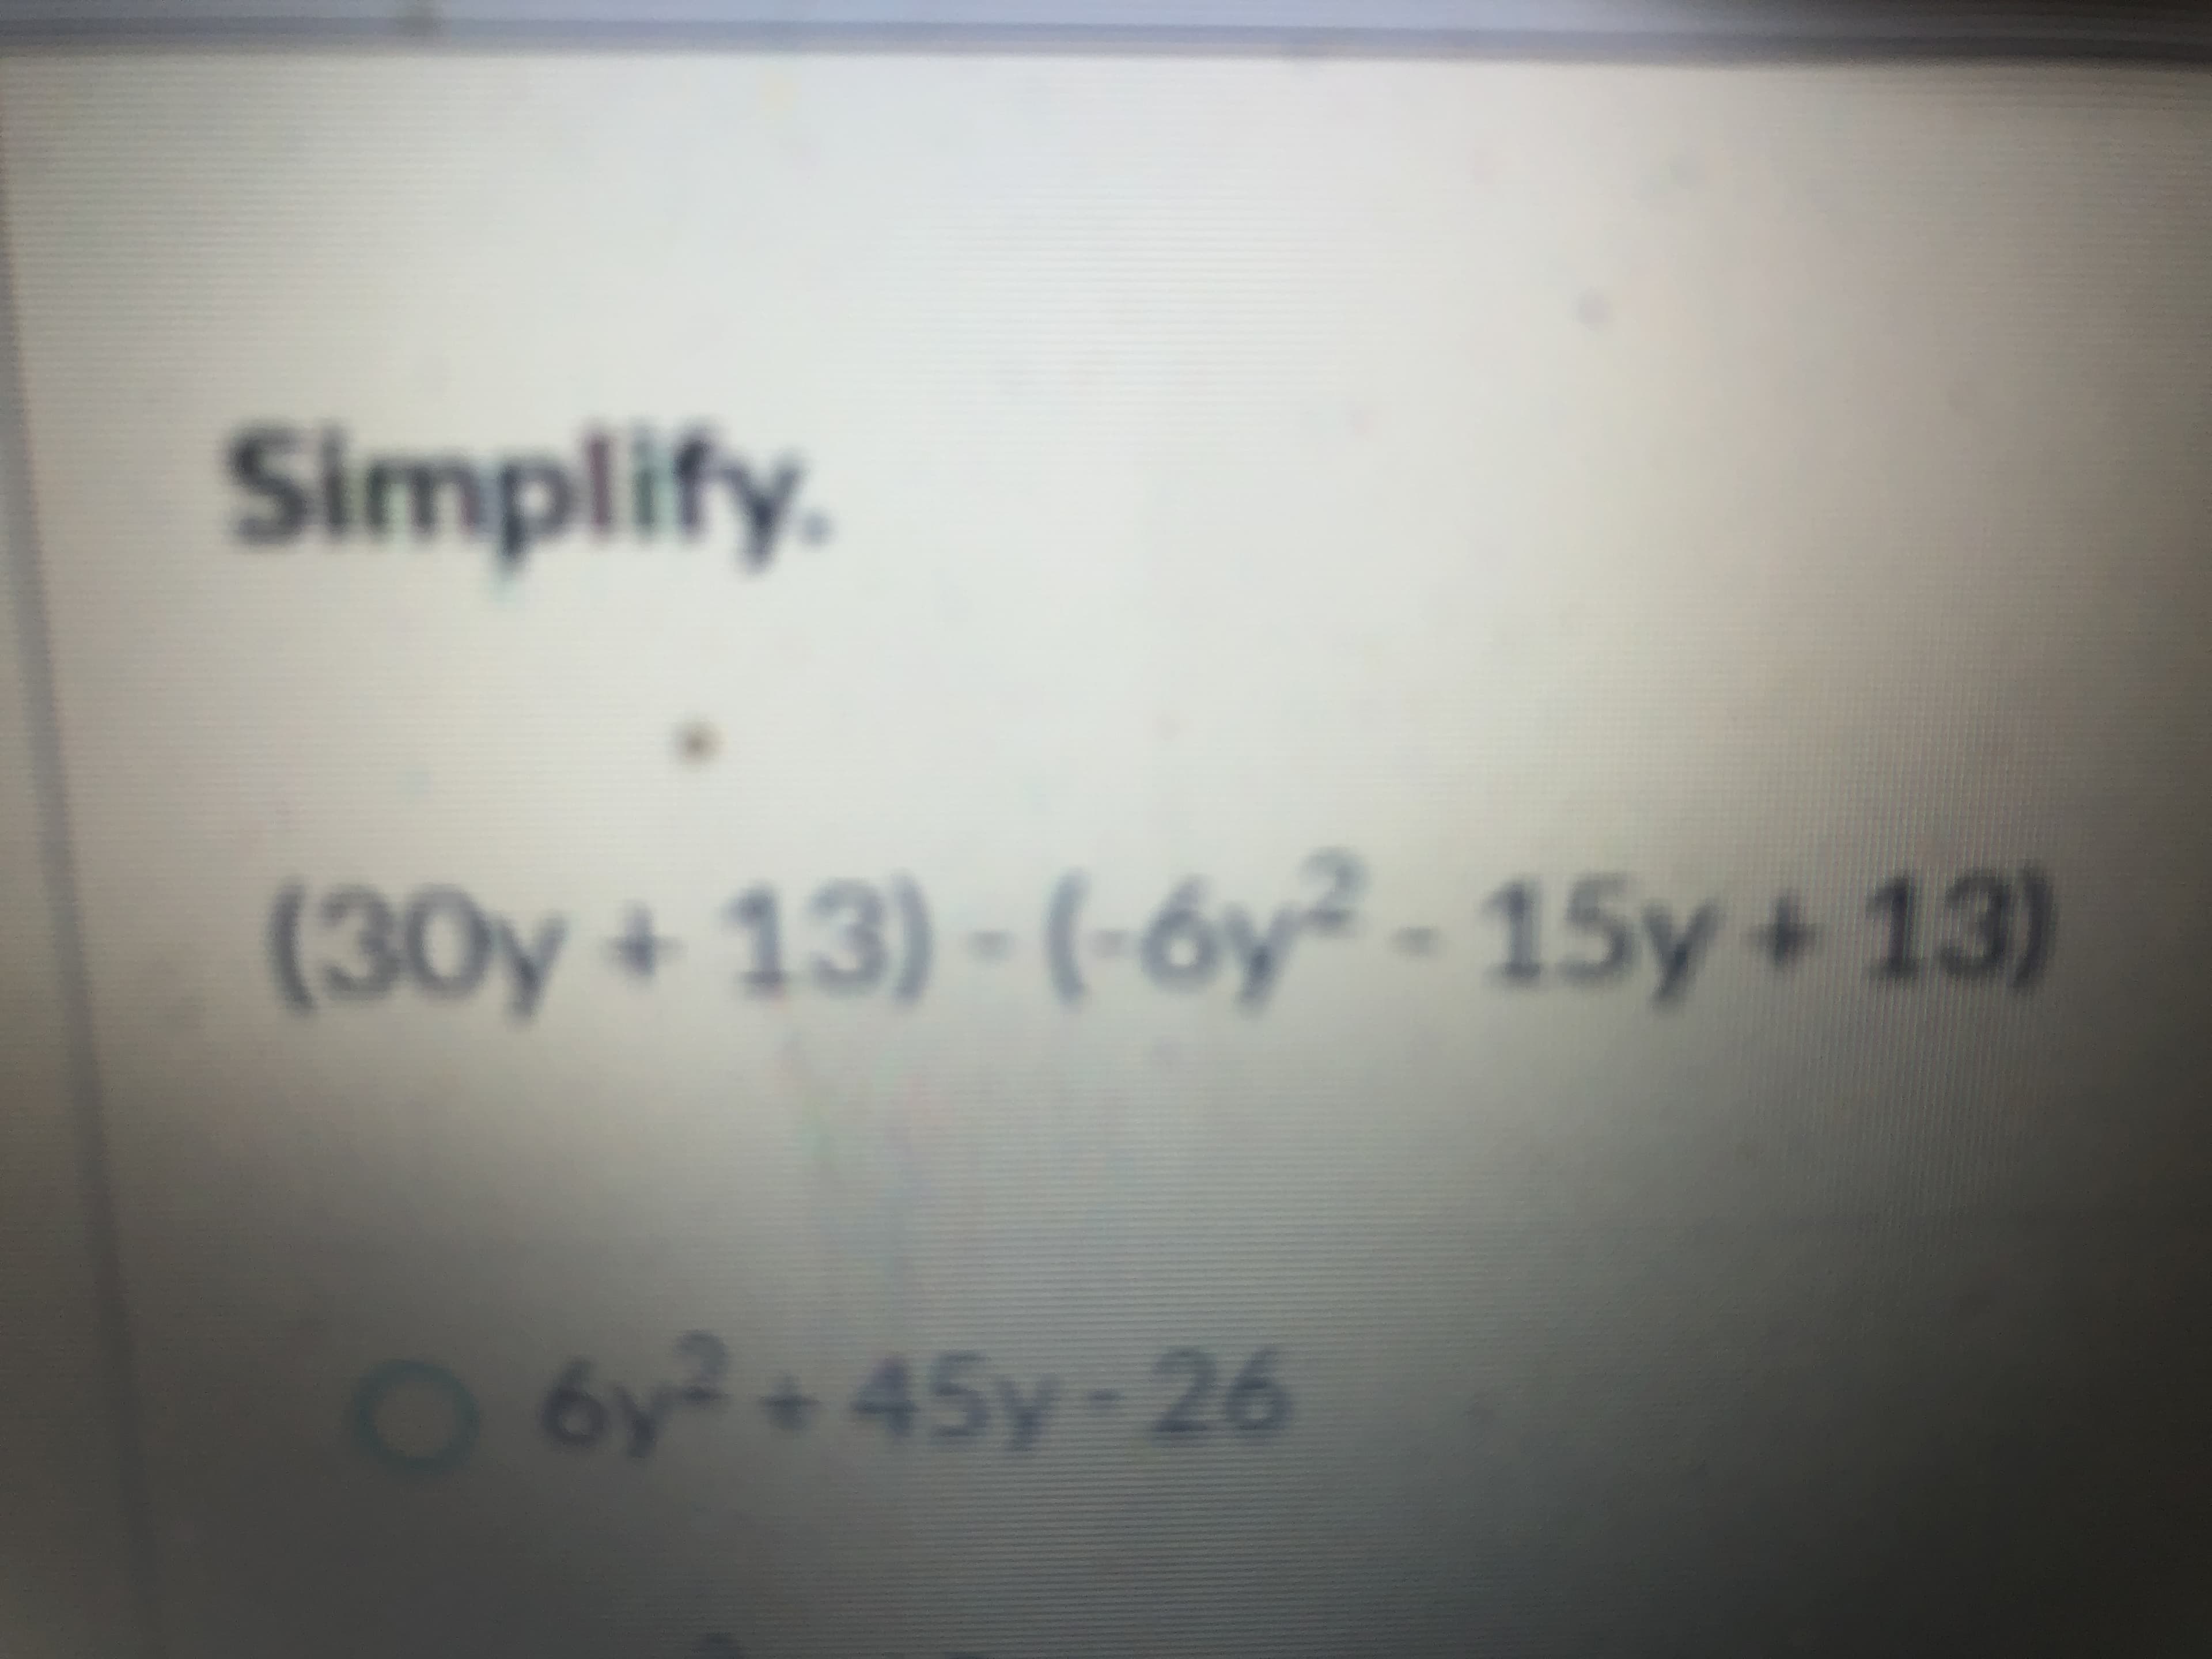 Simplify.
(30y+ 13) - (-6y² - 15y + 13)
O6y?+45y-26
